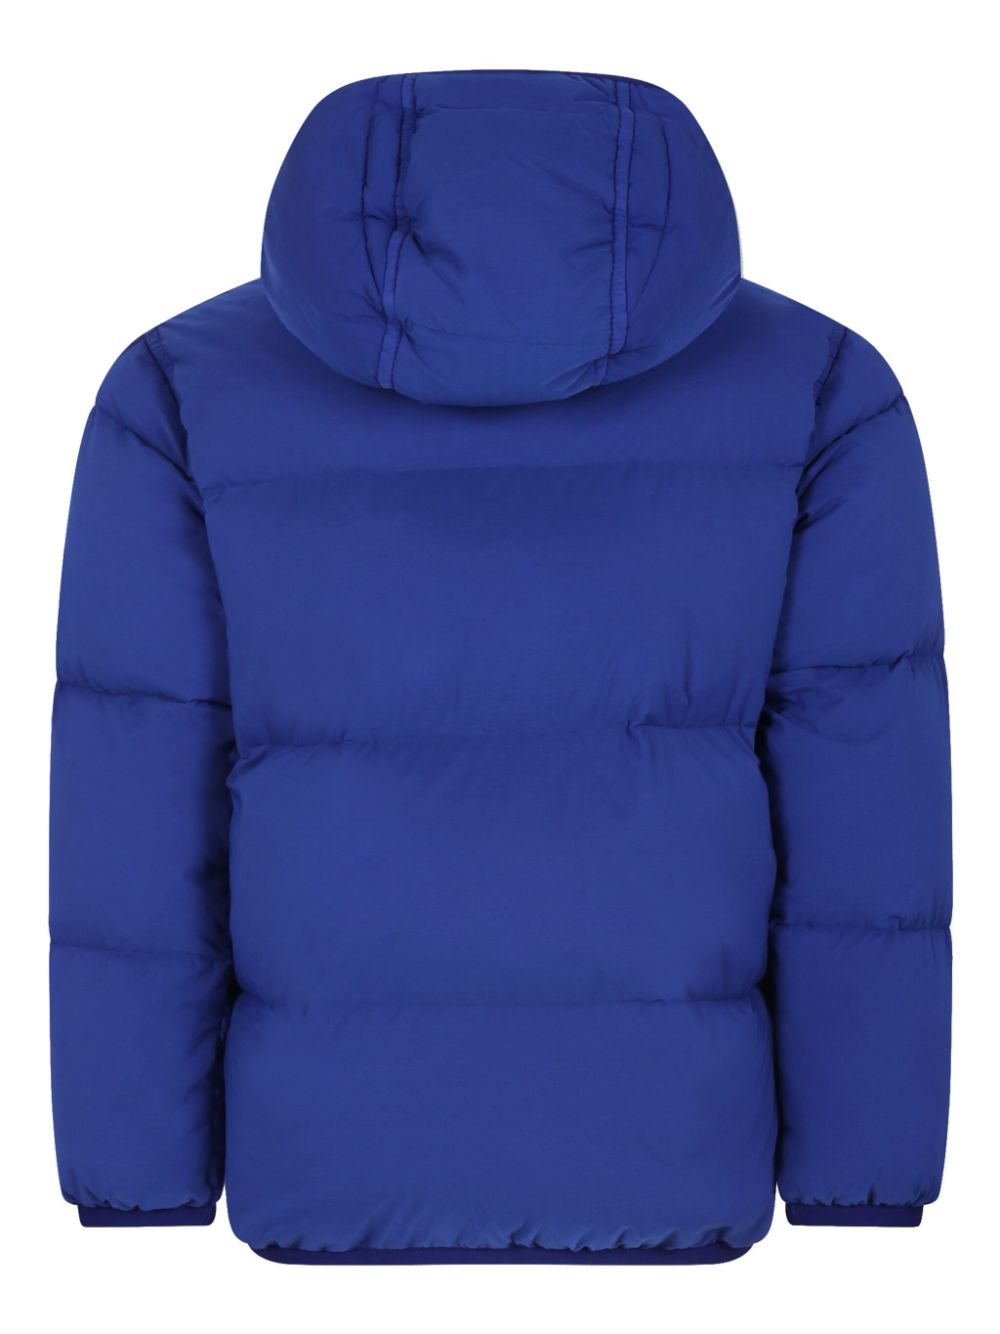 Blue nylon padded jacket for children